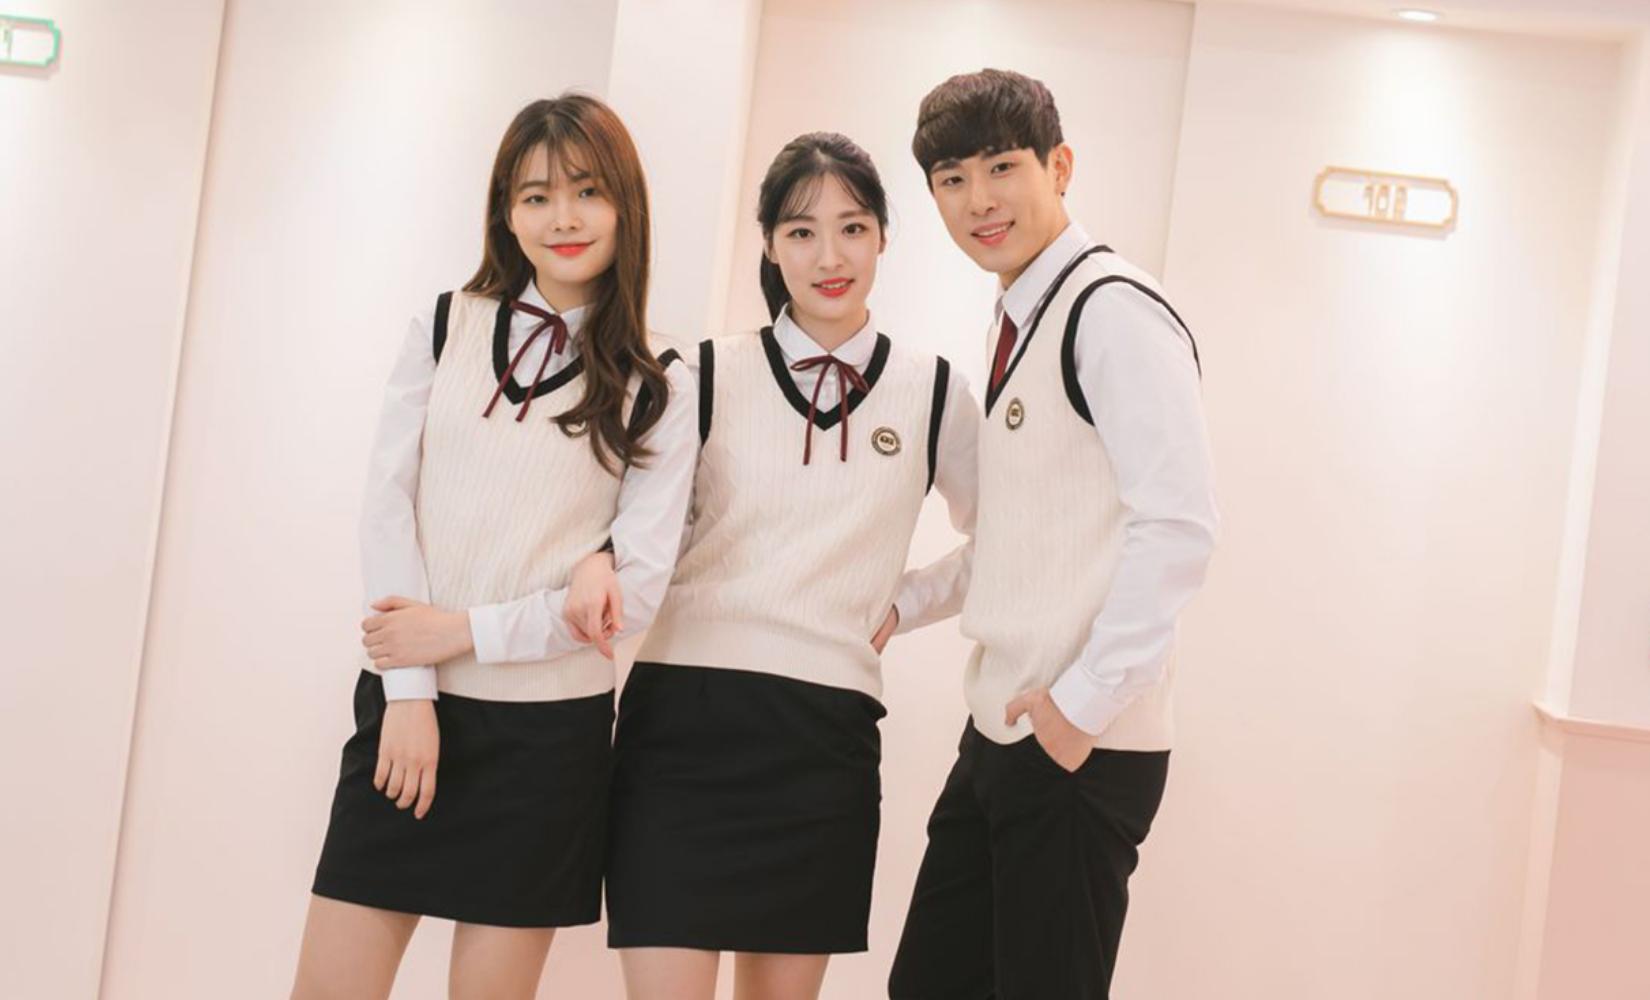 Ehwa School Uniform: Thuê đồng phục học sinh giống idol ở Jamsil, Hàn Quốc